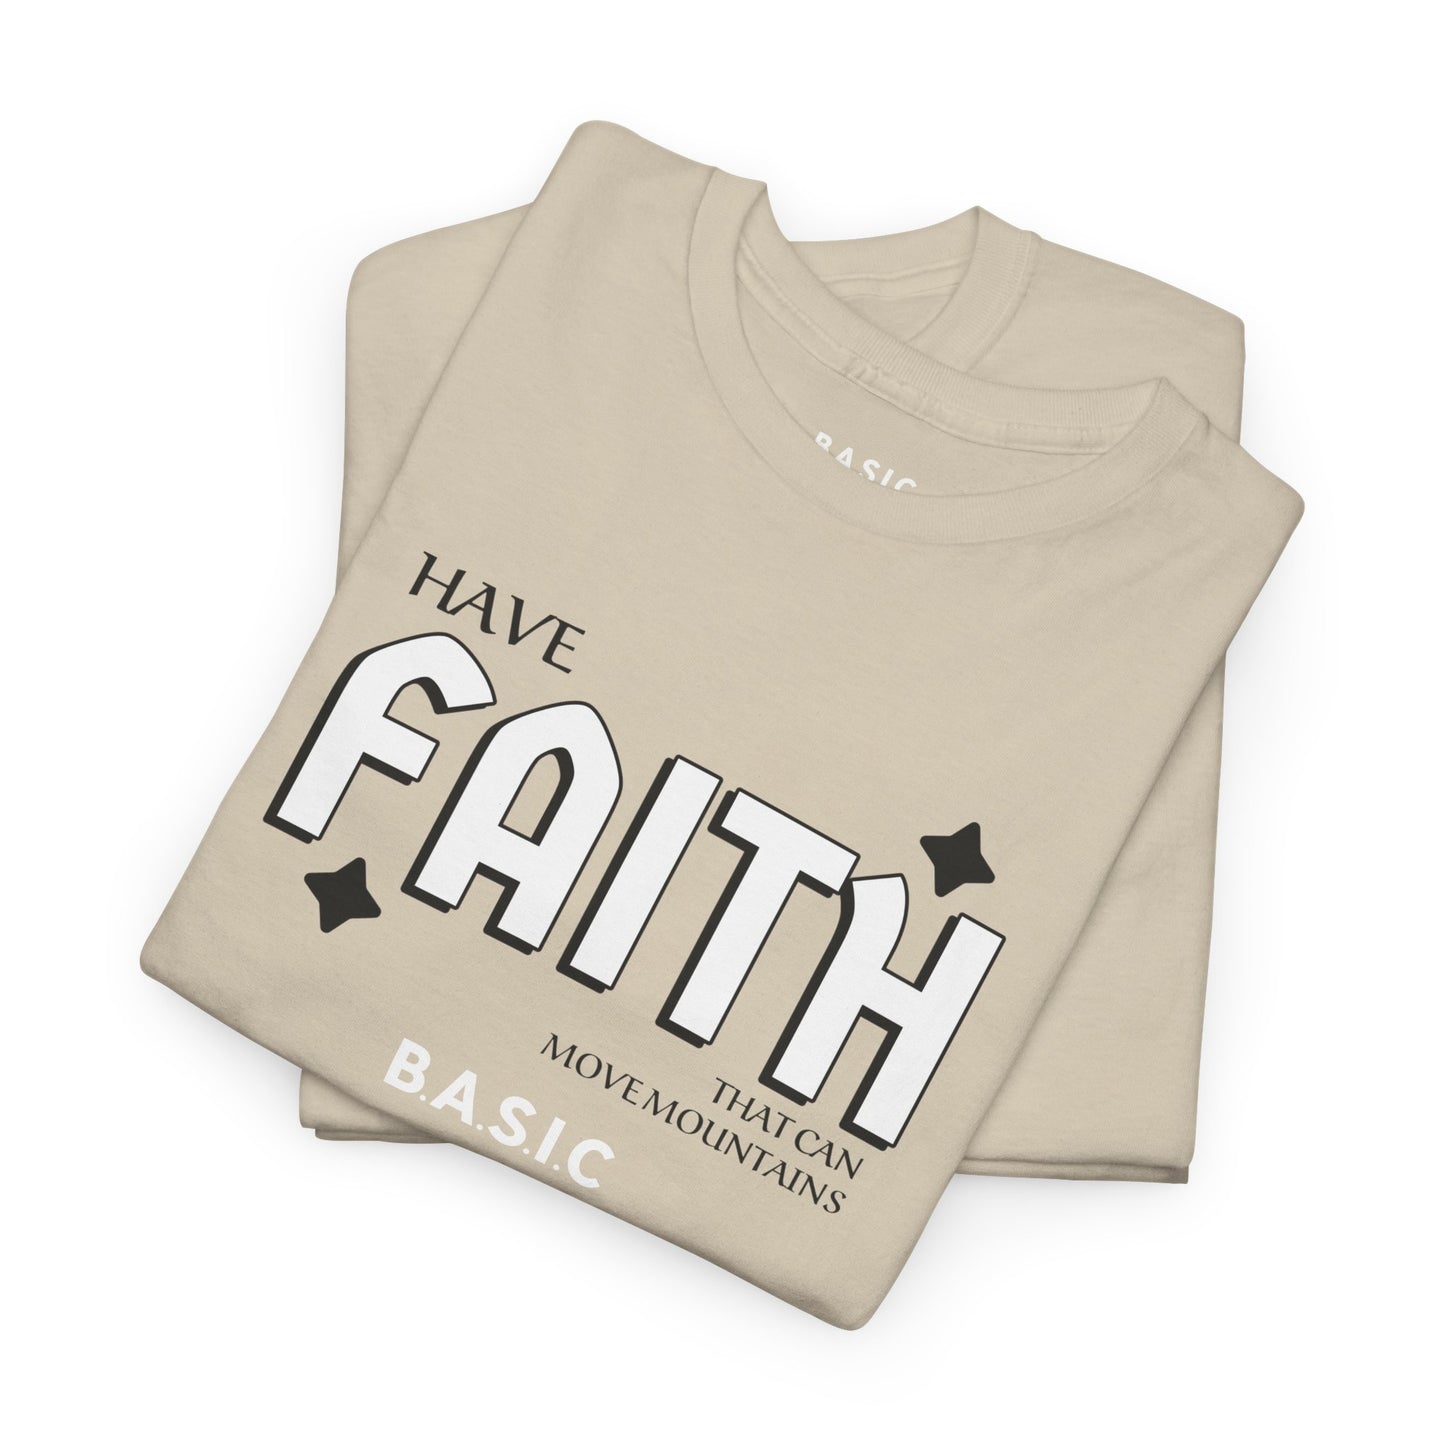 Unisex B.A.S.I.C "FAITH" T Shirt